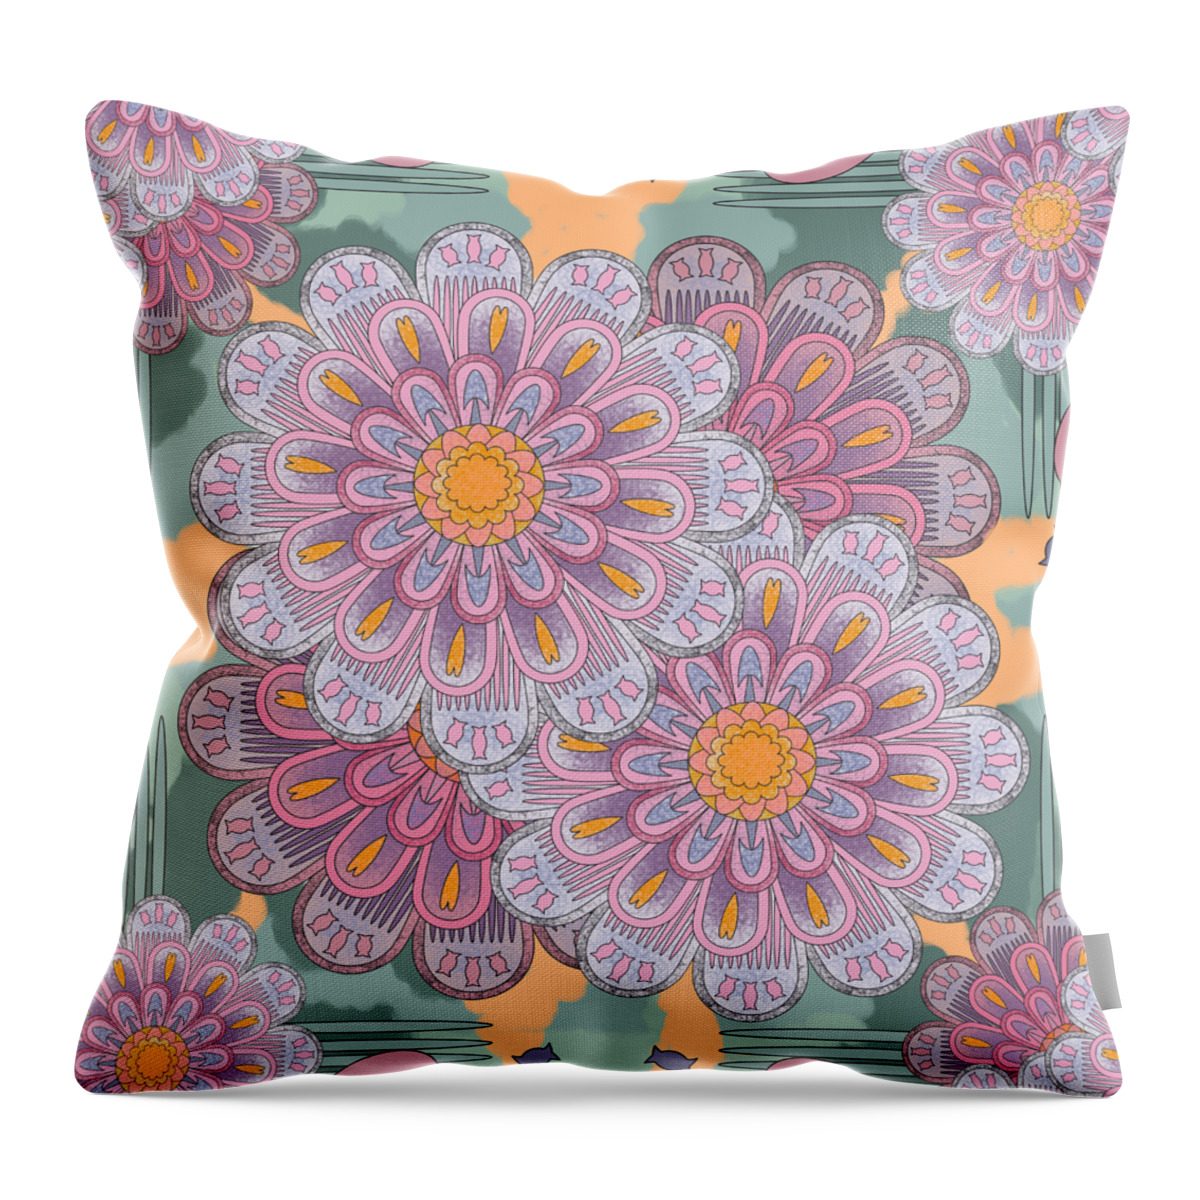 Pink Throw Pillow featuring the digital art Pink Zinnia Mandala by April Burton